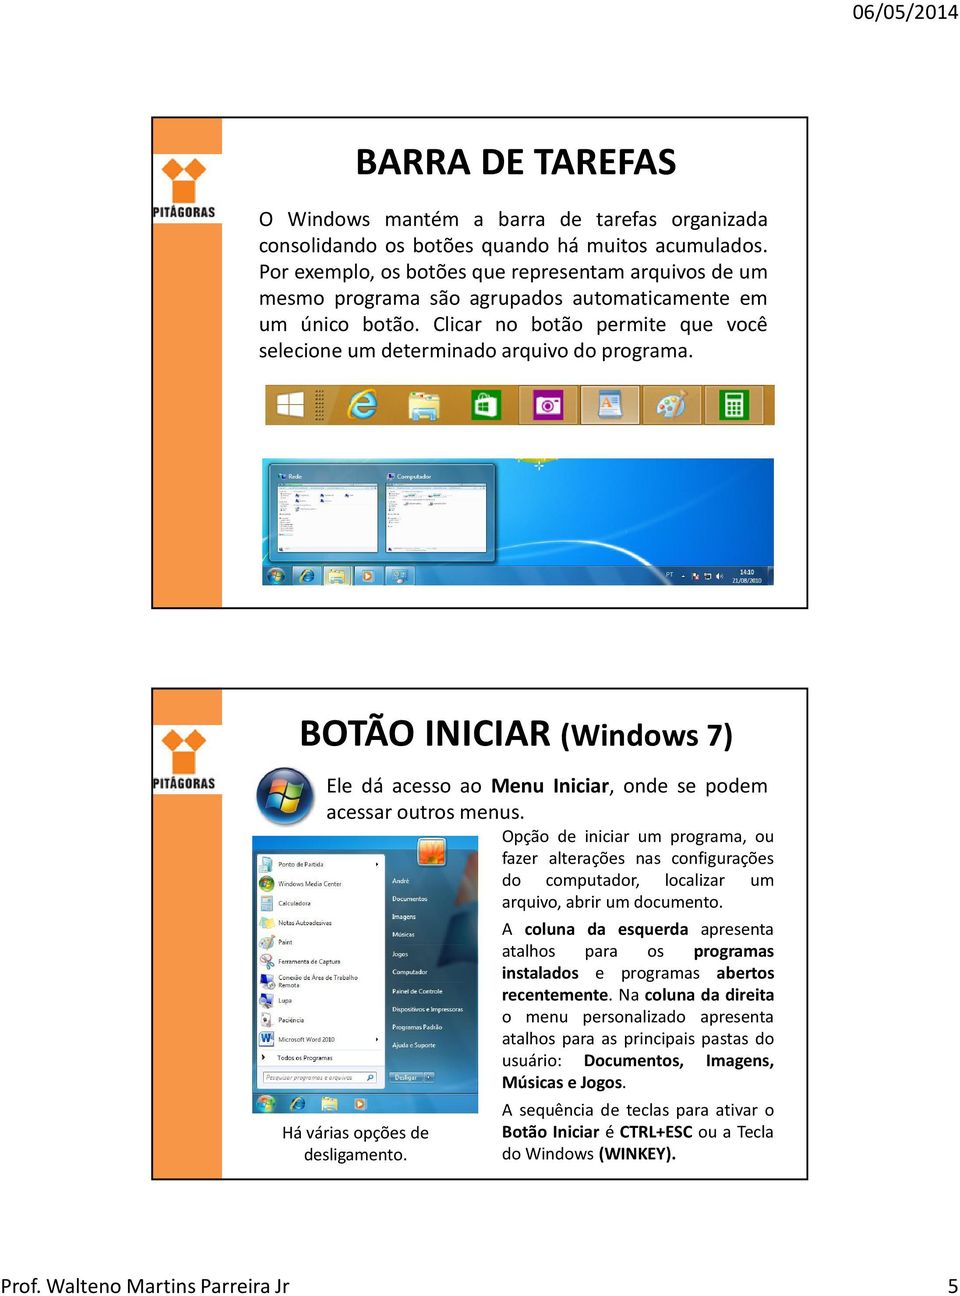 BOTÃO INICIAR (Windows 7) Ele dá acesso ao Menu Iniciar, onde se podem acessar outros menus.